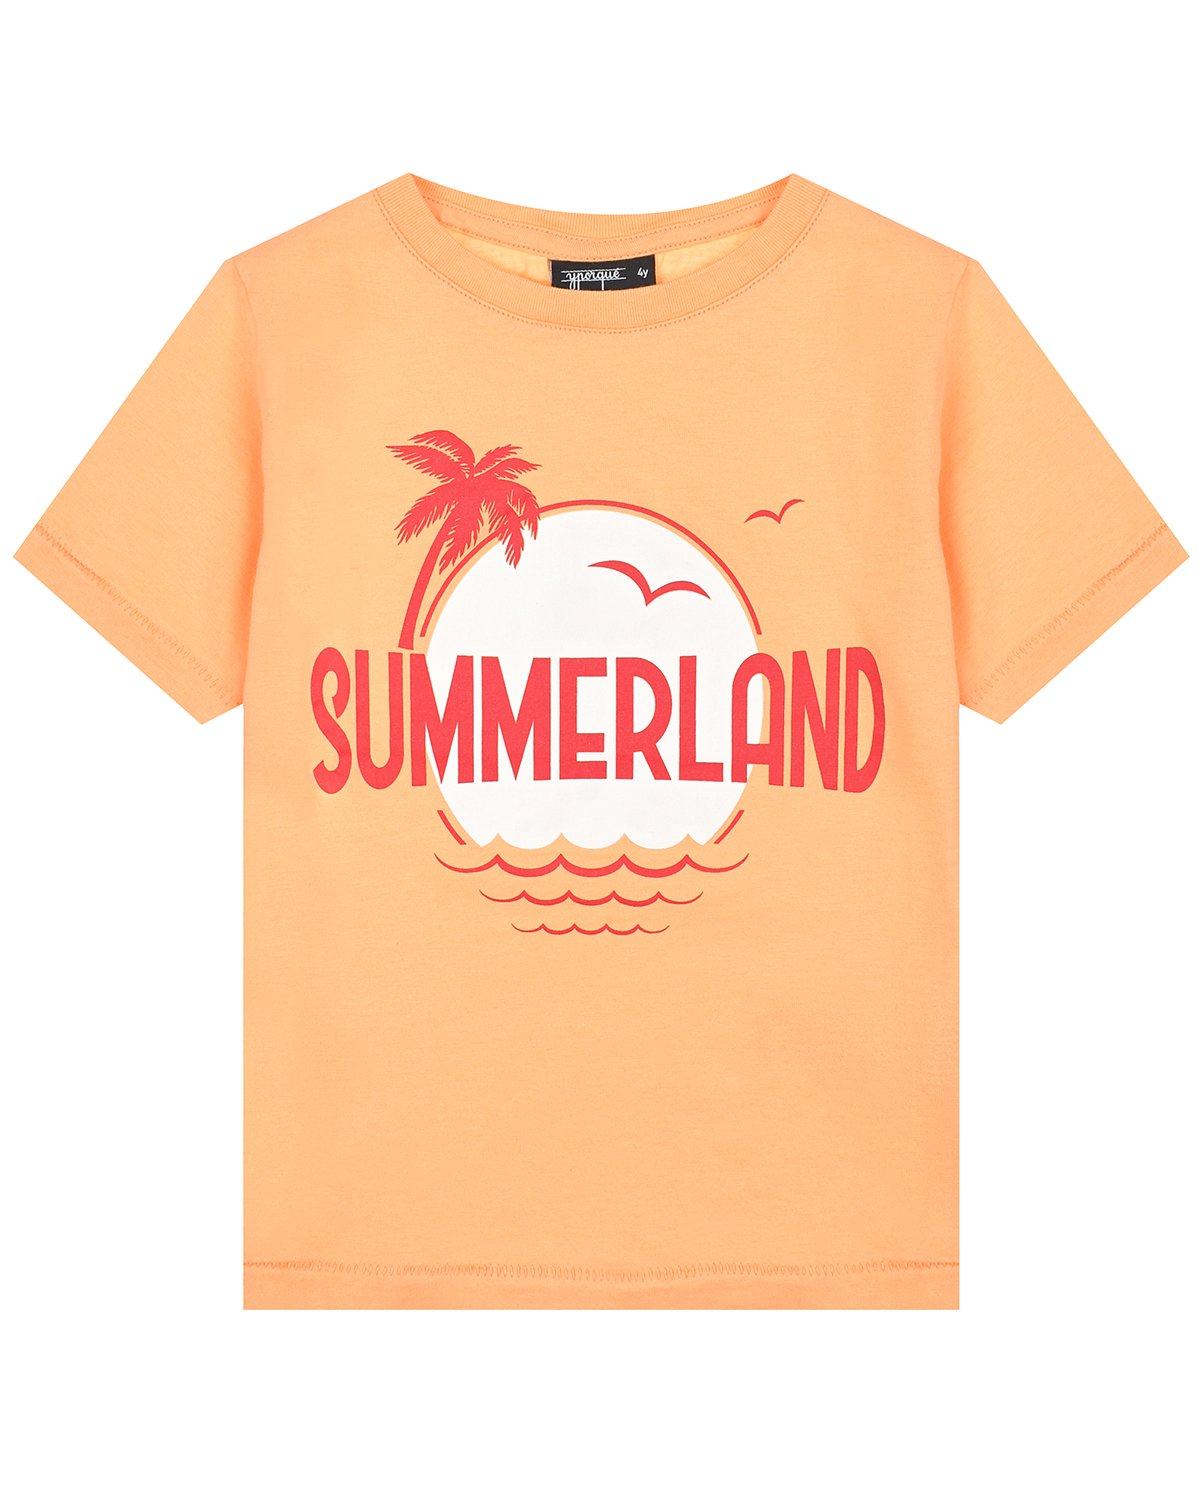 Оранжевая футболка с принтом "SUMMERLAND" Yporque, размер 140, цвет оранжевый - фото 1